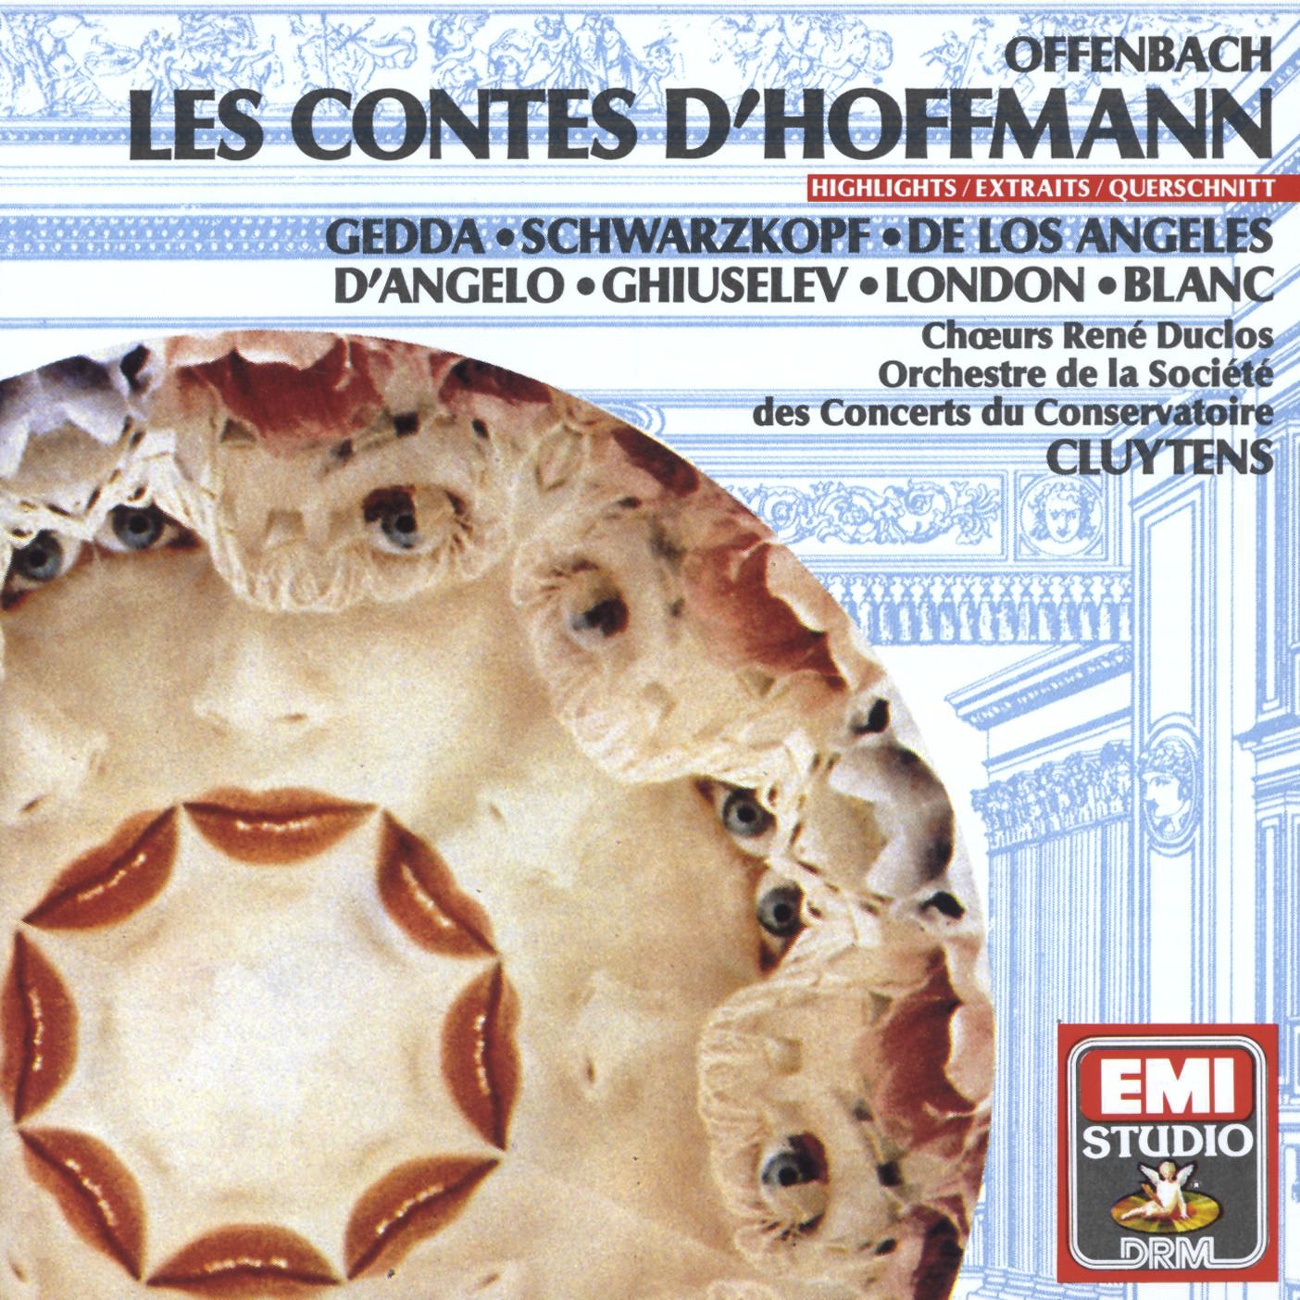 Les Contes d' Hoffmann 1989 Digital Remaster, TROISIEME ACTE ACT THREE DRITTER AKT: Entr' acte et Barcarolle:  Belle nuit,  nui